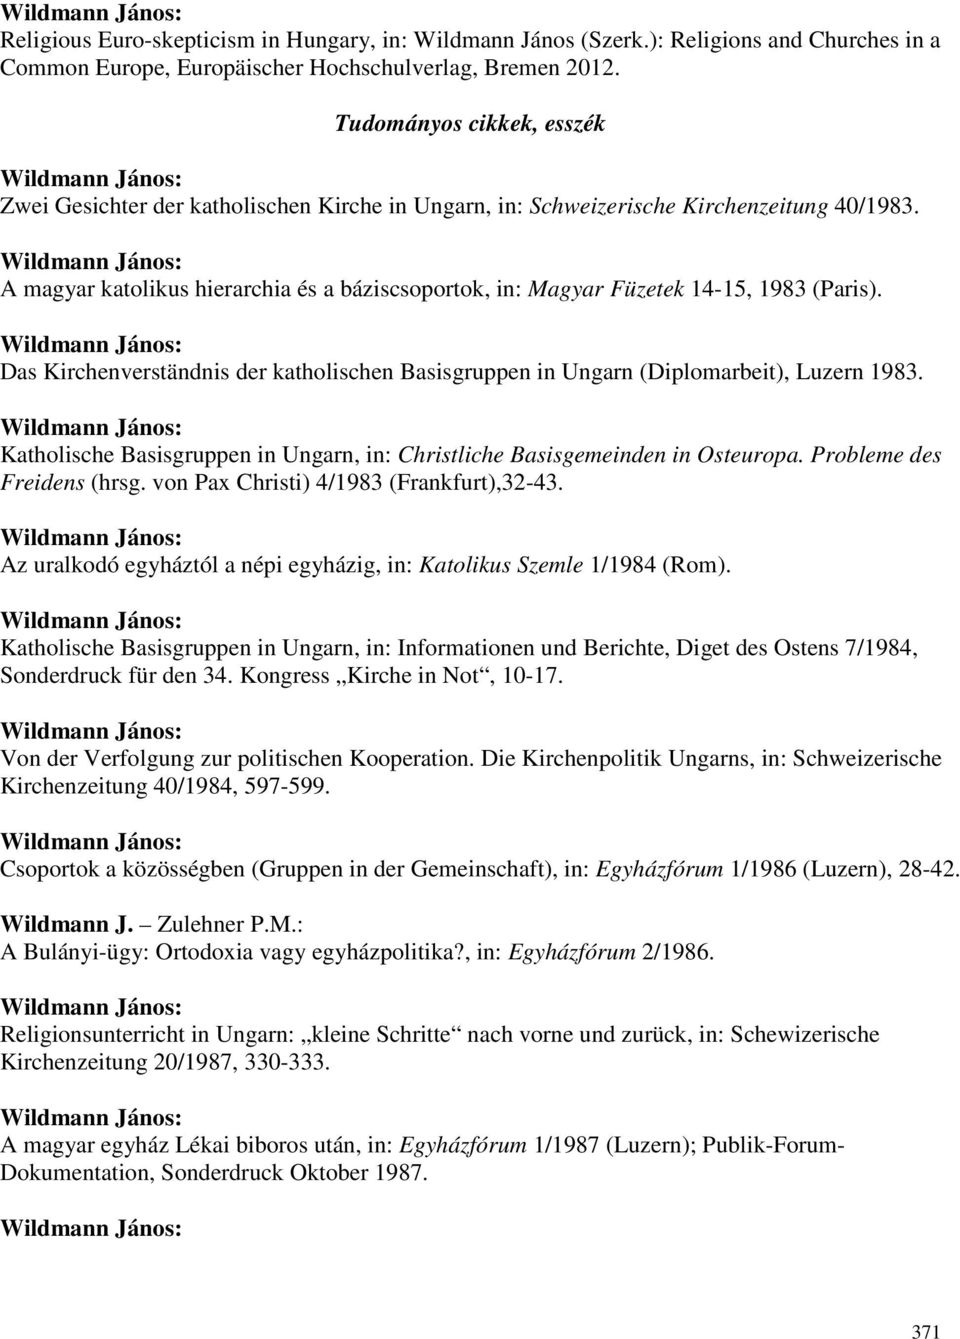 A magyar katolikus hierarchia és a báziscsoportok, in: Magyar Füzetek 14-15, 1983 (Paris). Das Kirchenverständnis der katholischen Basisgruppen in Ungarn (Diplomarbeit), Luzern 1983.